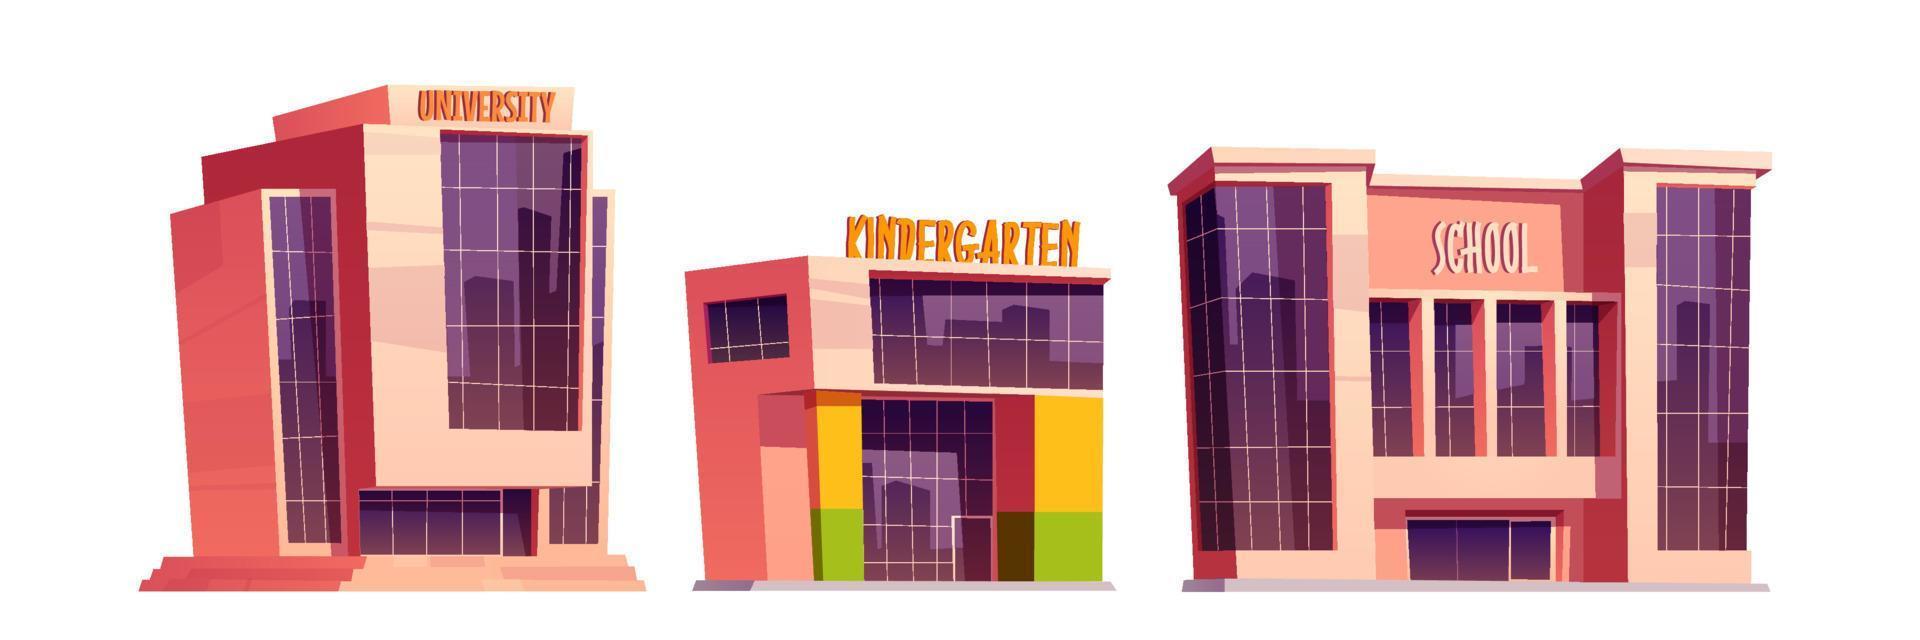 Buildings of school, kindergarten and university vector